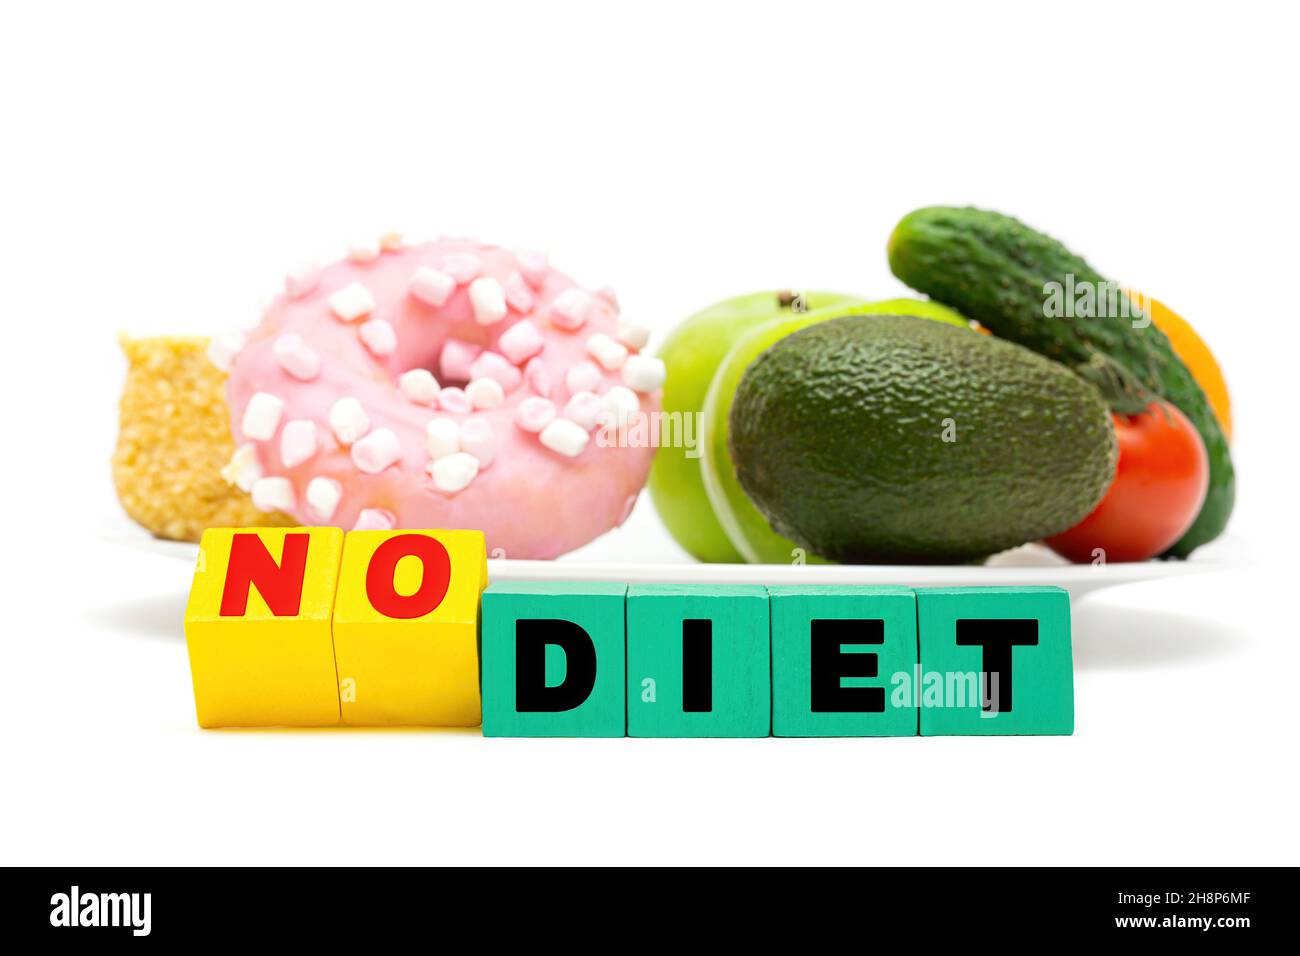 Essverhalten und Lebensmittelentscheidungskonzept. Text KEINE DIÄT aus Buchstabenblöcken vor einem weißen Teller mit Süßigkeiten, Obst und Gemüse. Stockfoto